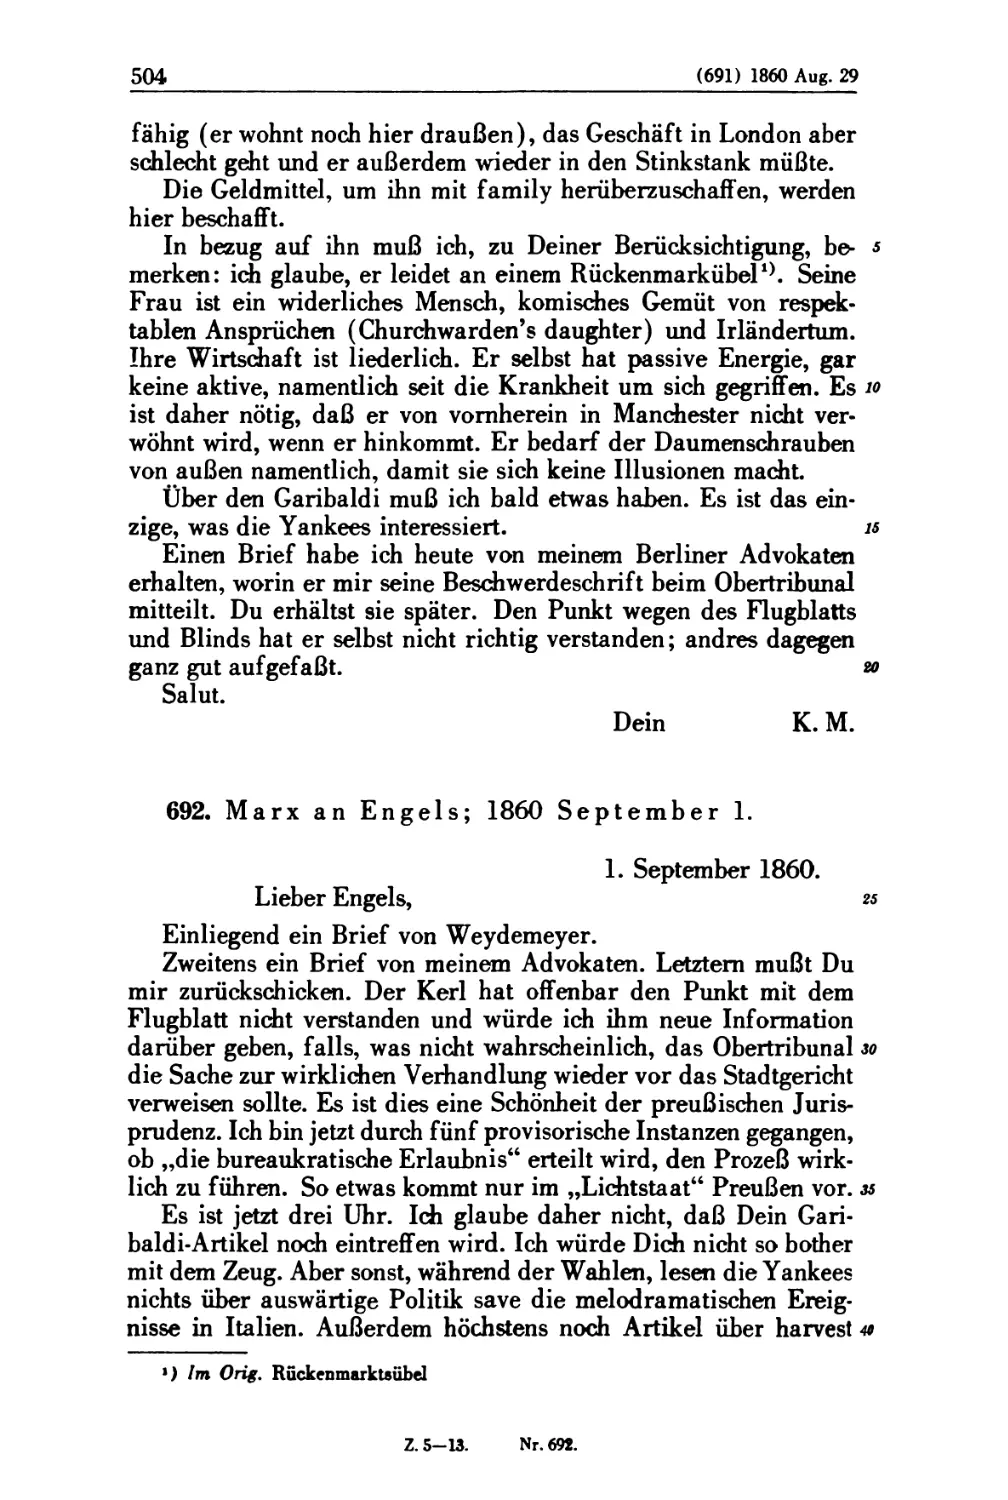 692. Marx an Engels; 1860 September 1